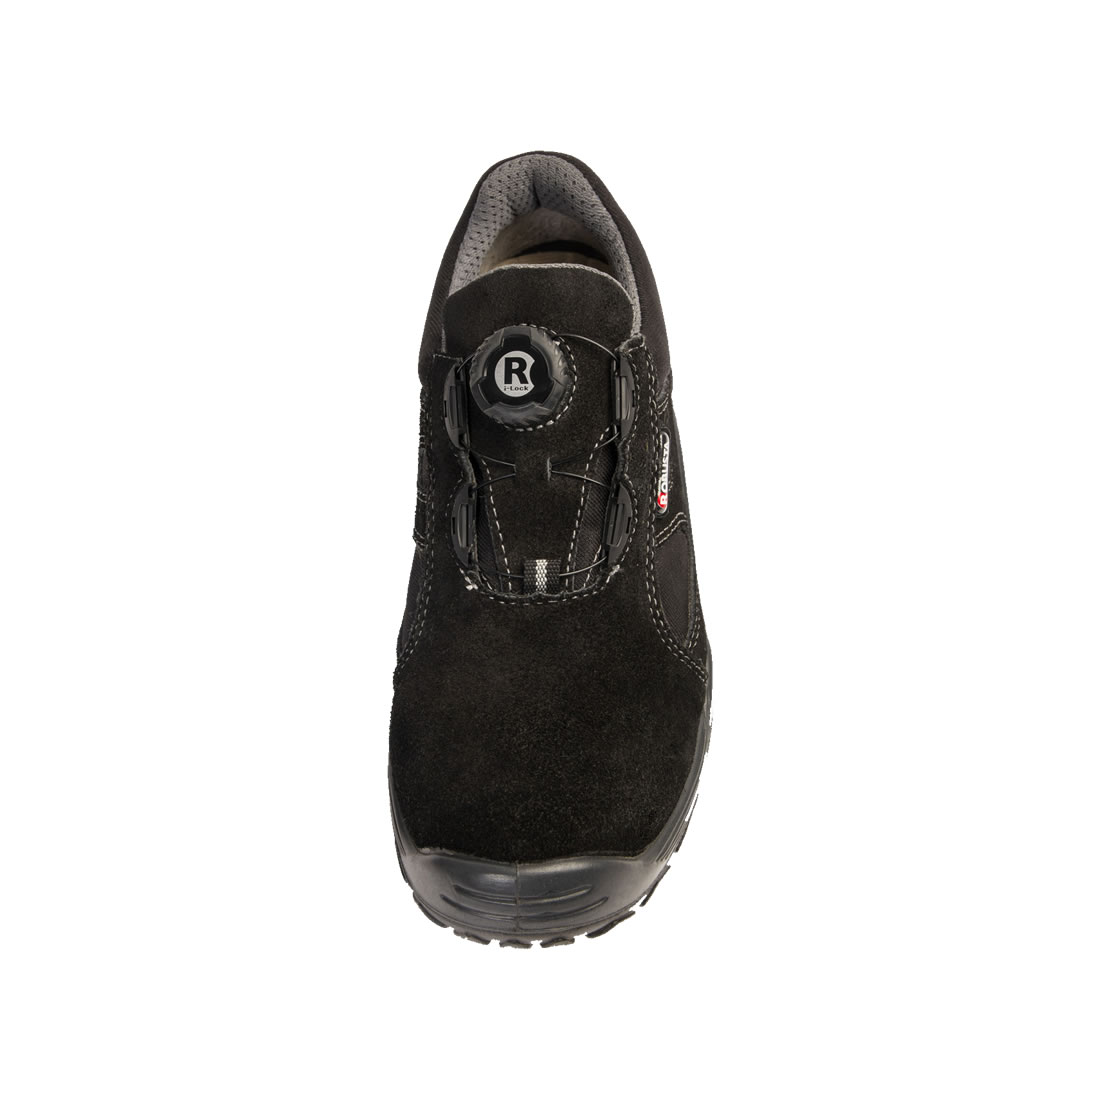 Zapato-Robusta-Runner-Air-lock-ConPuntera-Negro-calzaunico-7-1